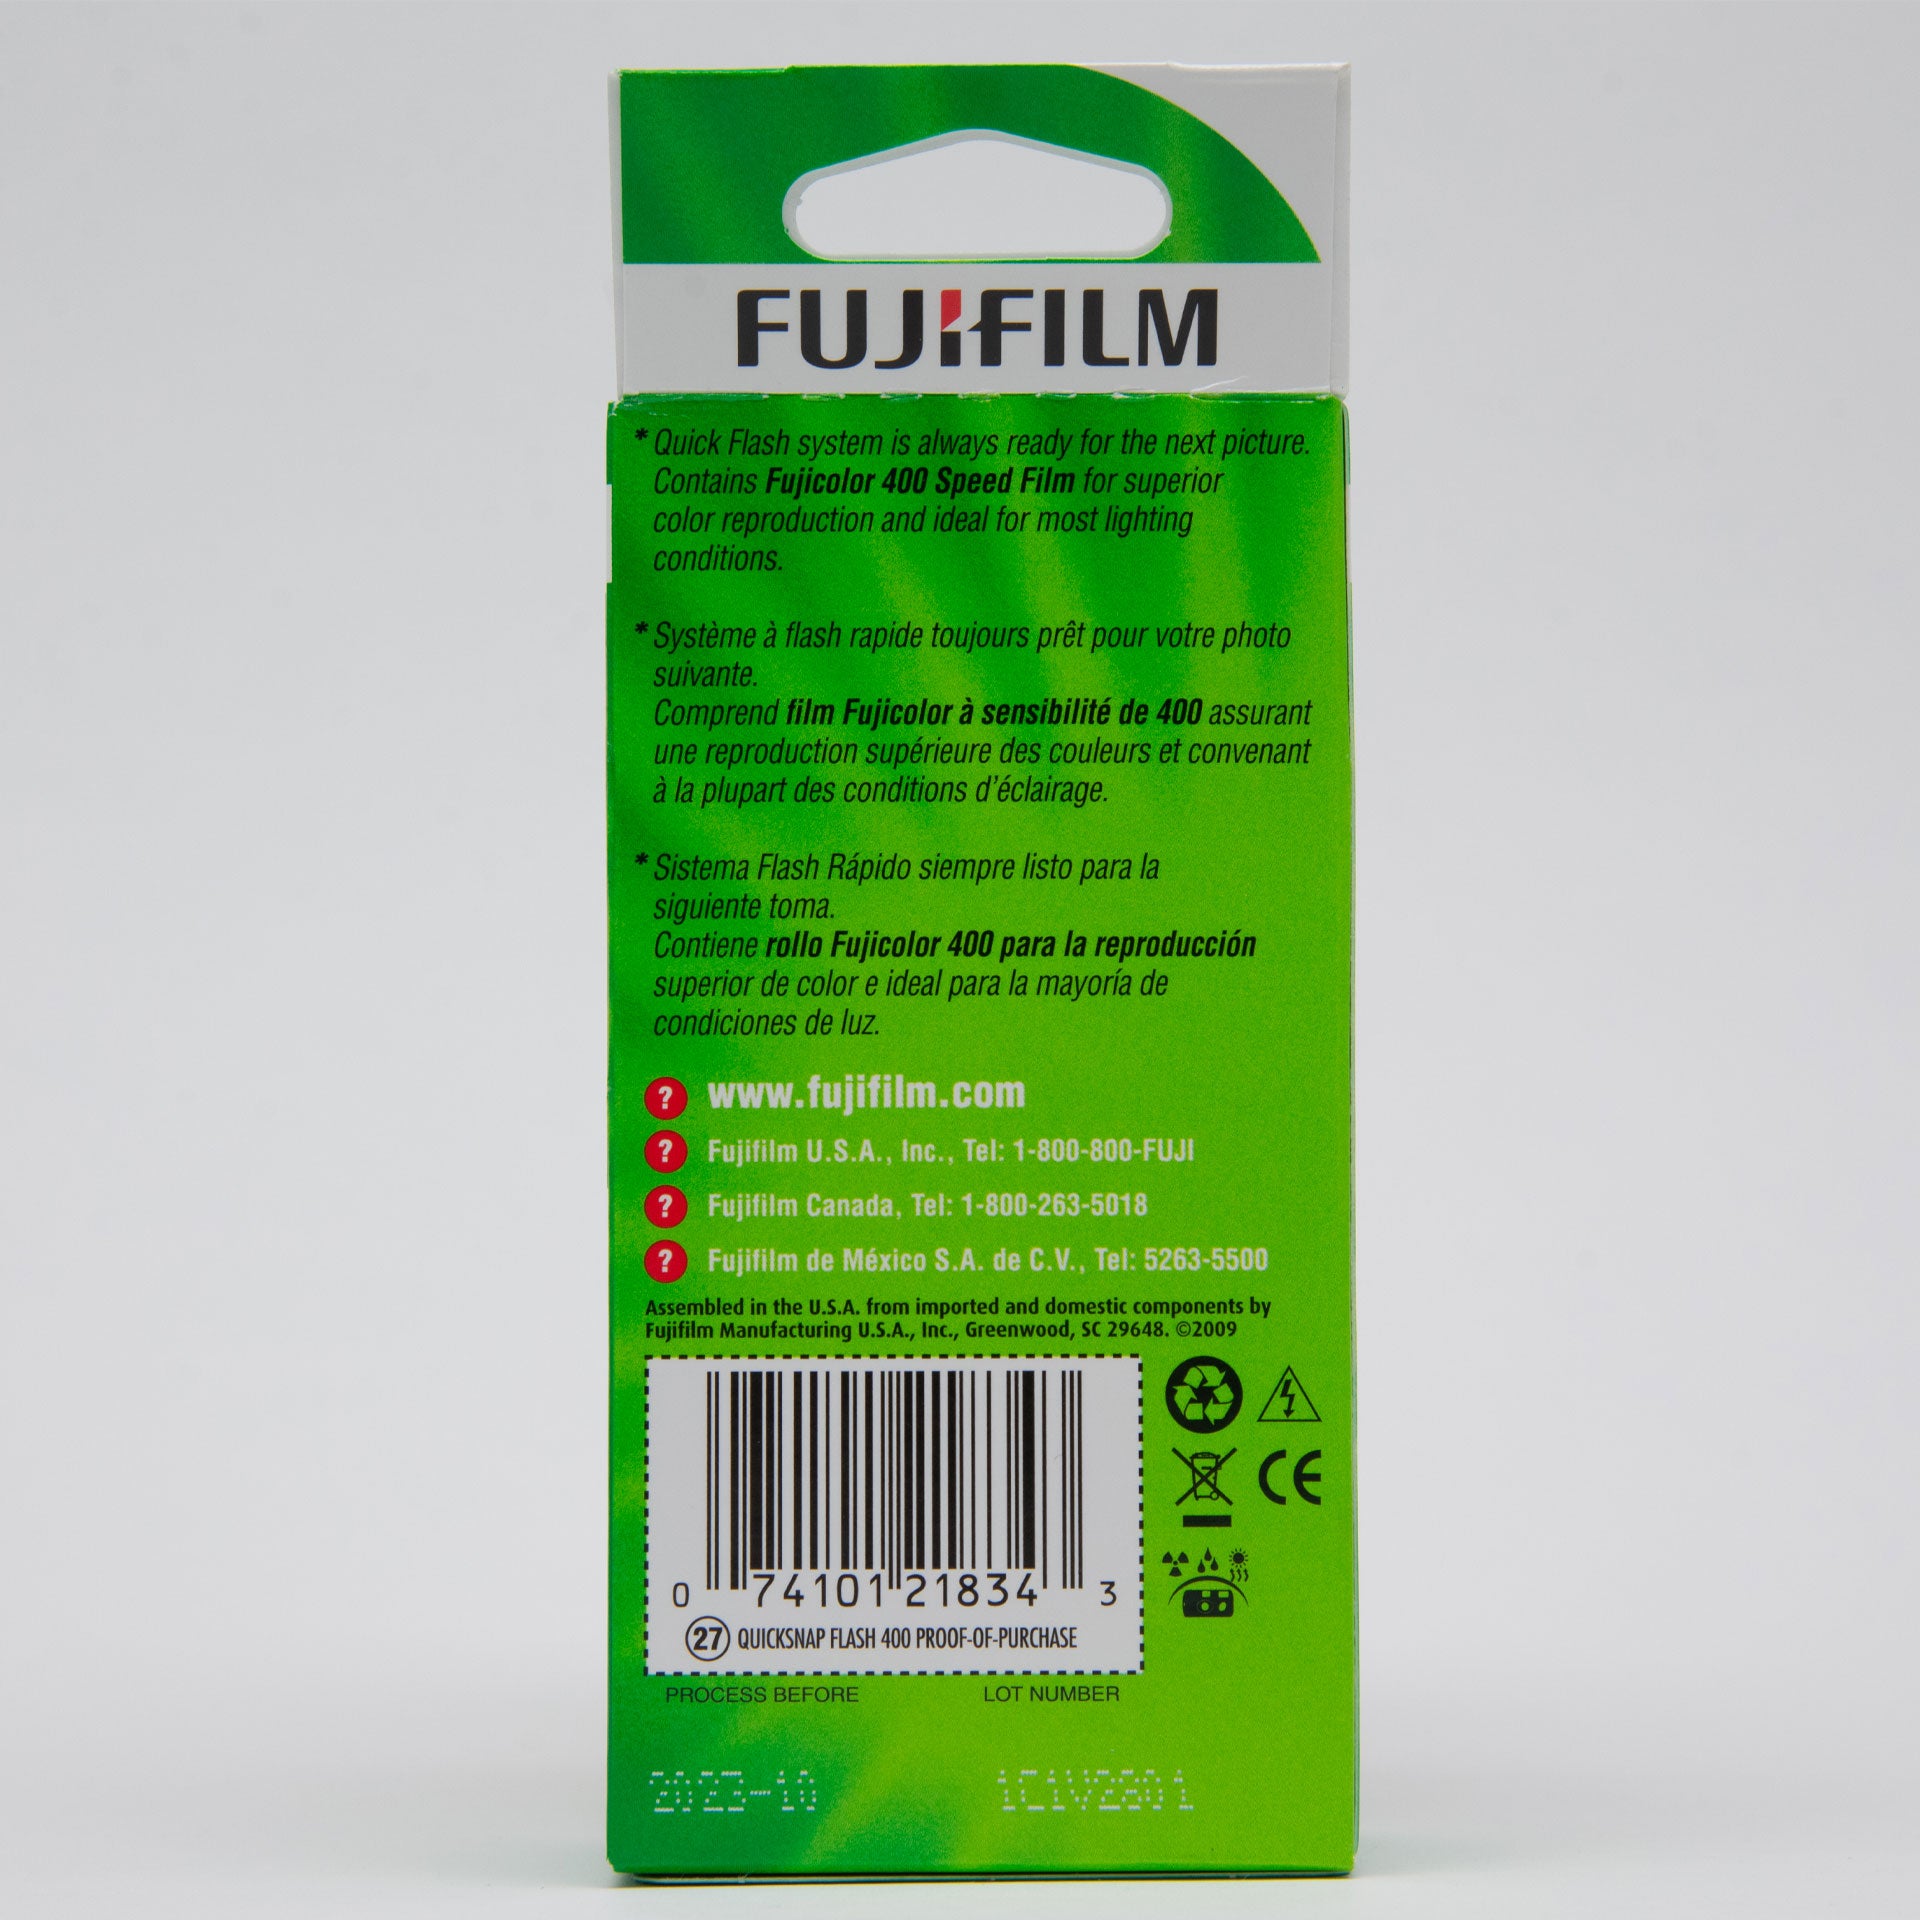 Cámara Quicksnap Fujifilm Super 400 Con Flash Desechable – NIEPCE